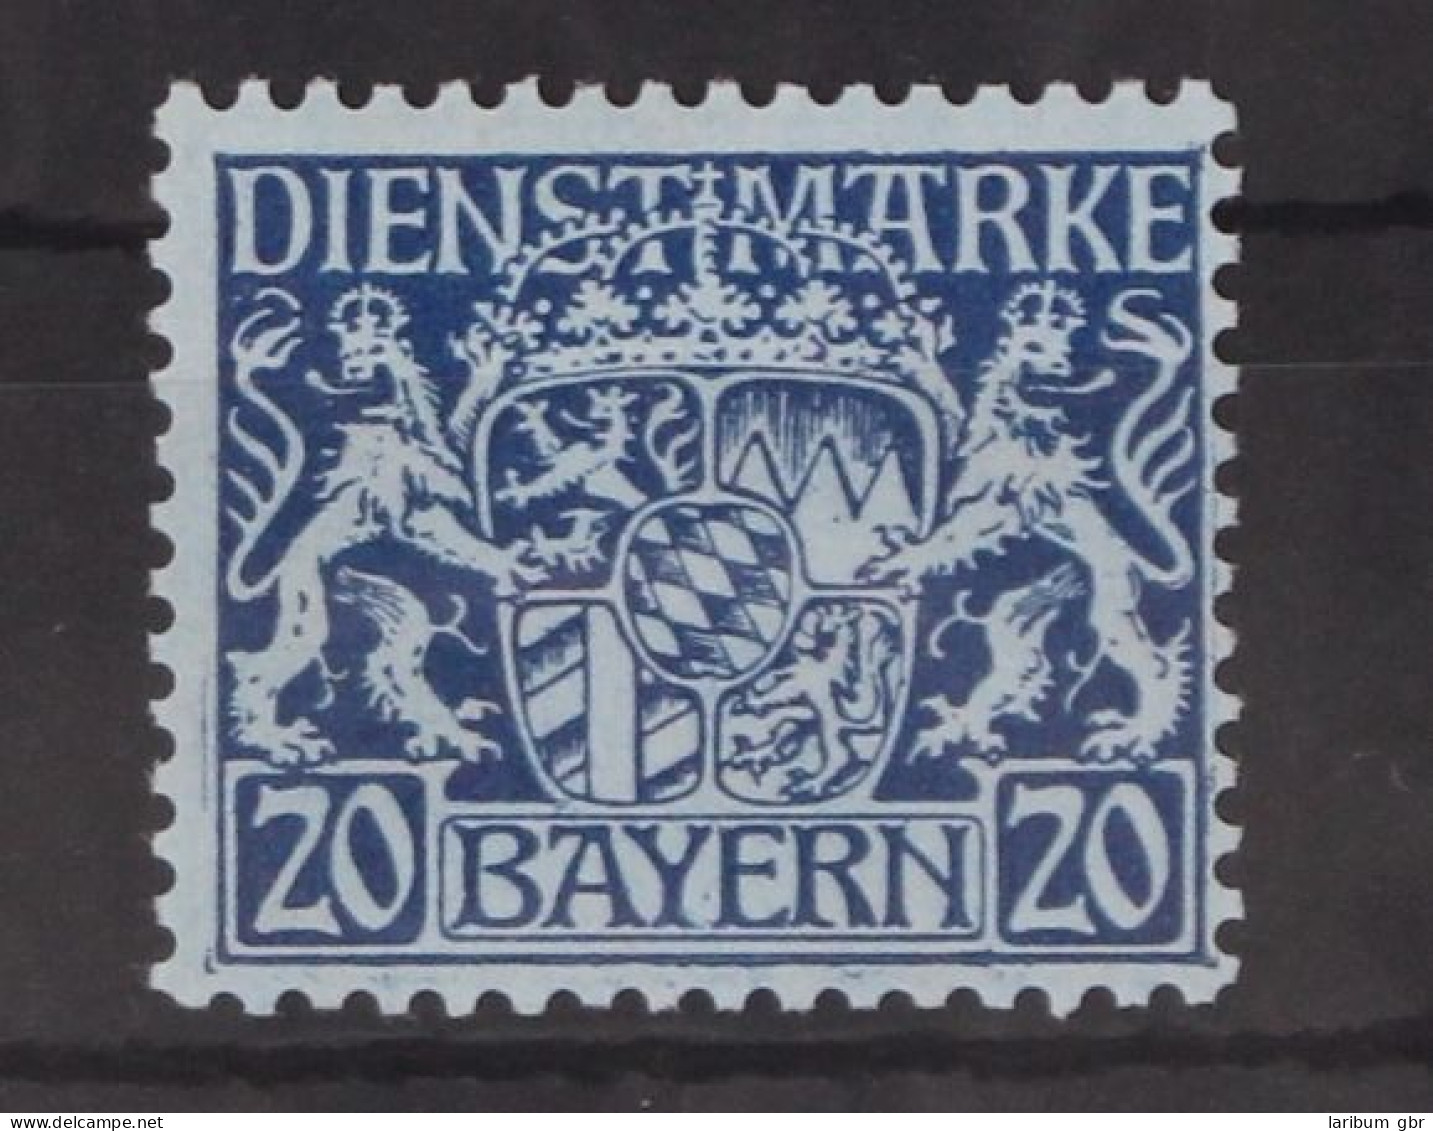 Bayern Dienstmarken 20 Postfrisch #GM098 - Neufs